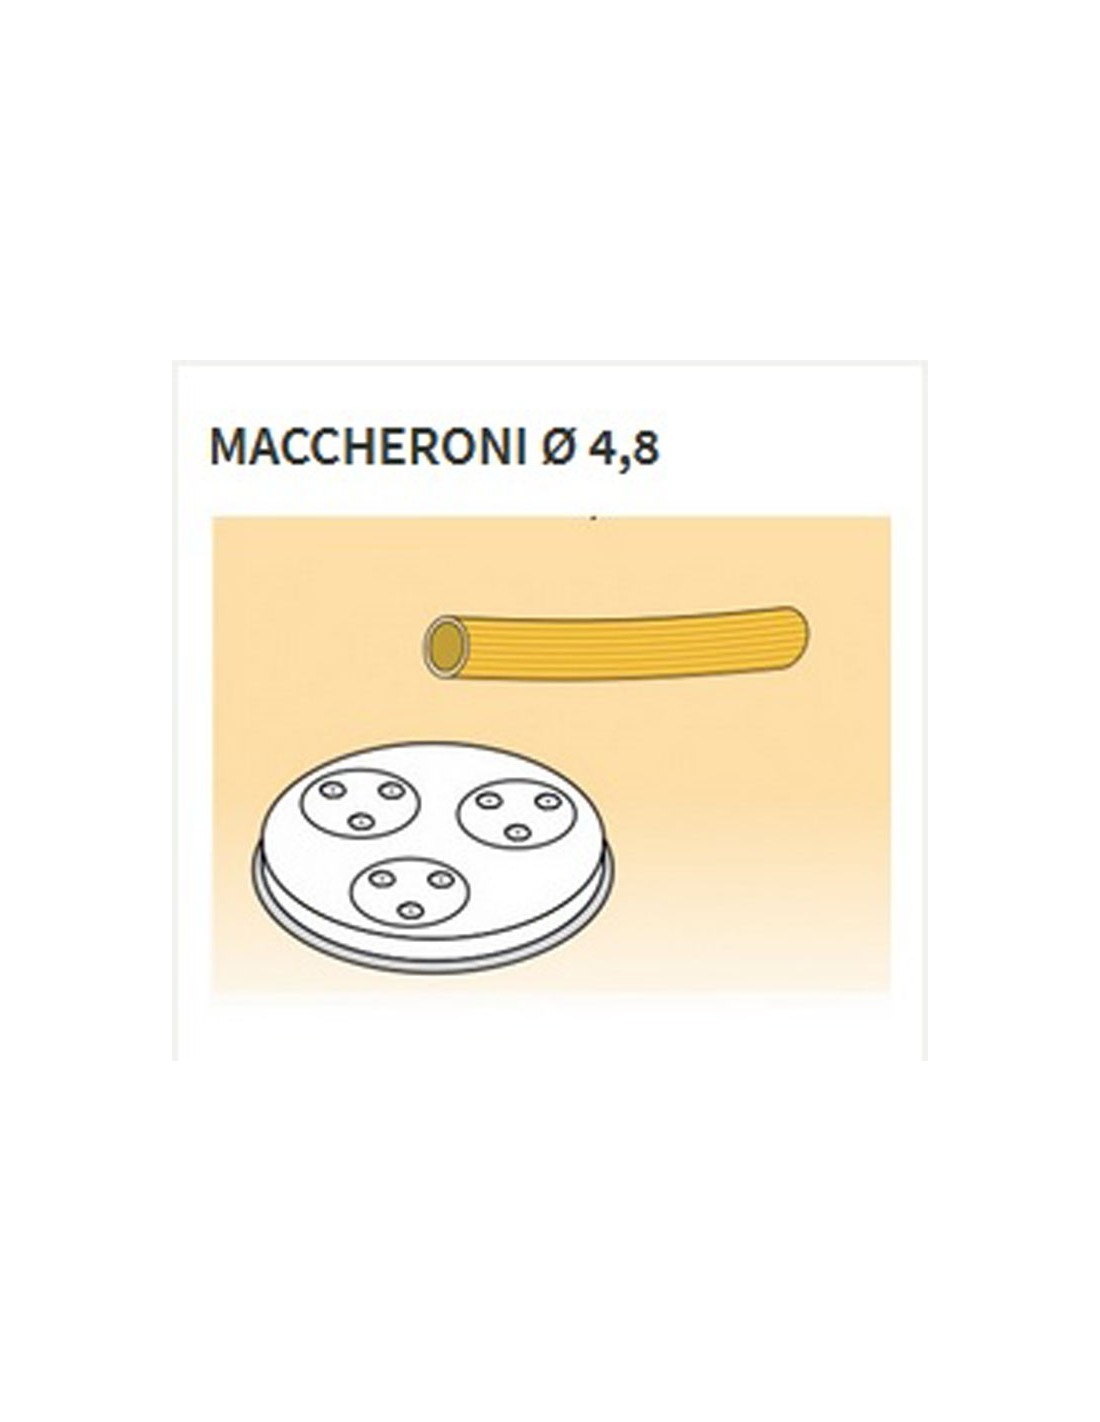 Matrices de aleación de latón de varias formas - Bronce - Para máquina de pasta fresca modelo MPF15 - Maccheroni Ø mm 4.8